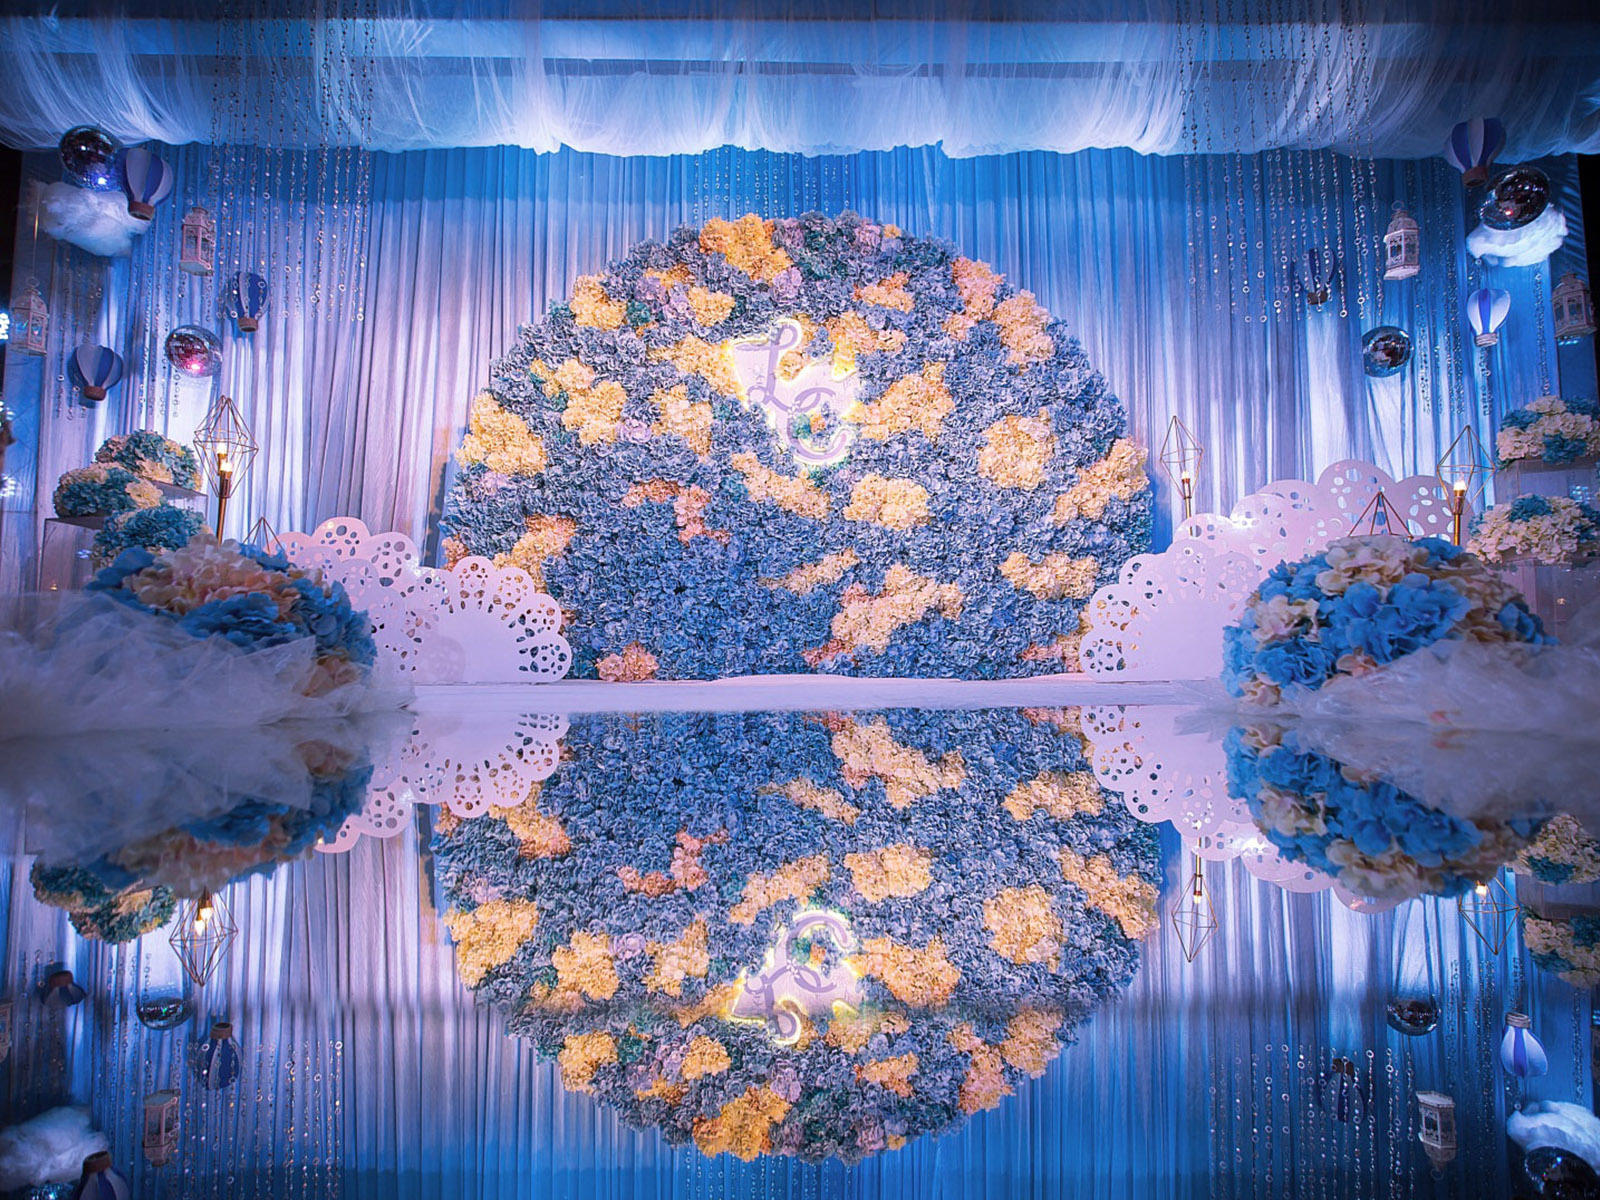 【金色百年】蓝色梦想——主题婚礼